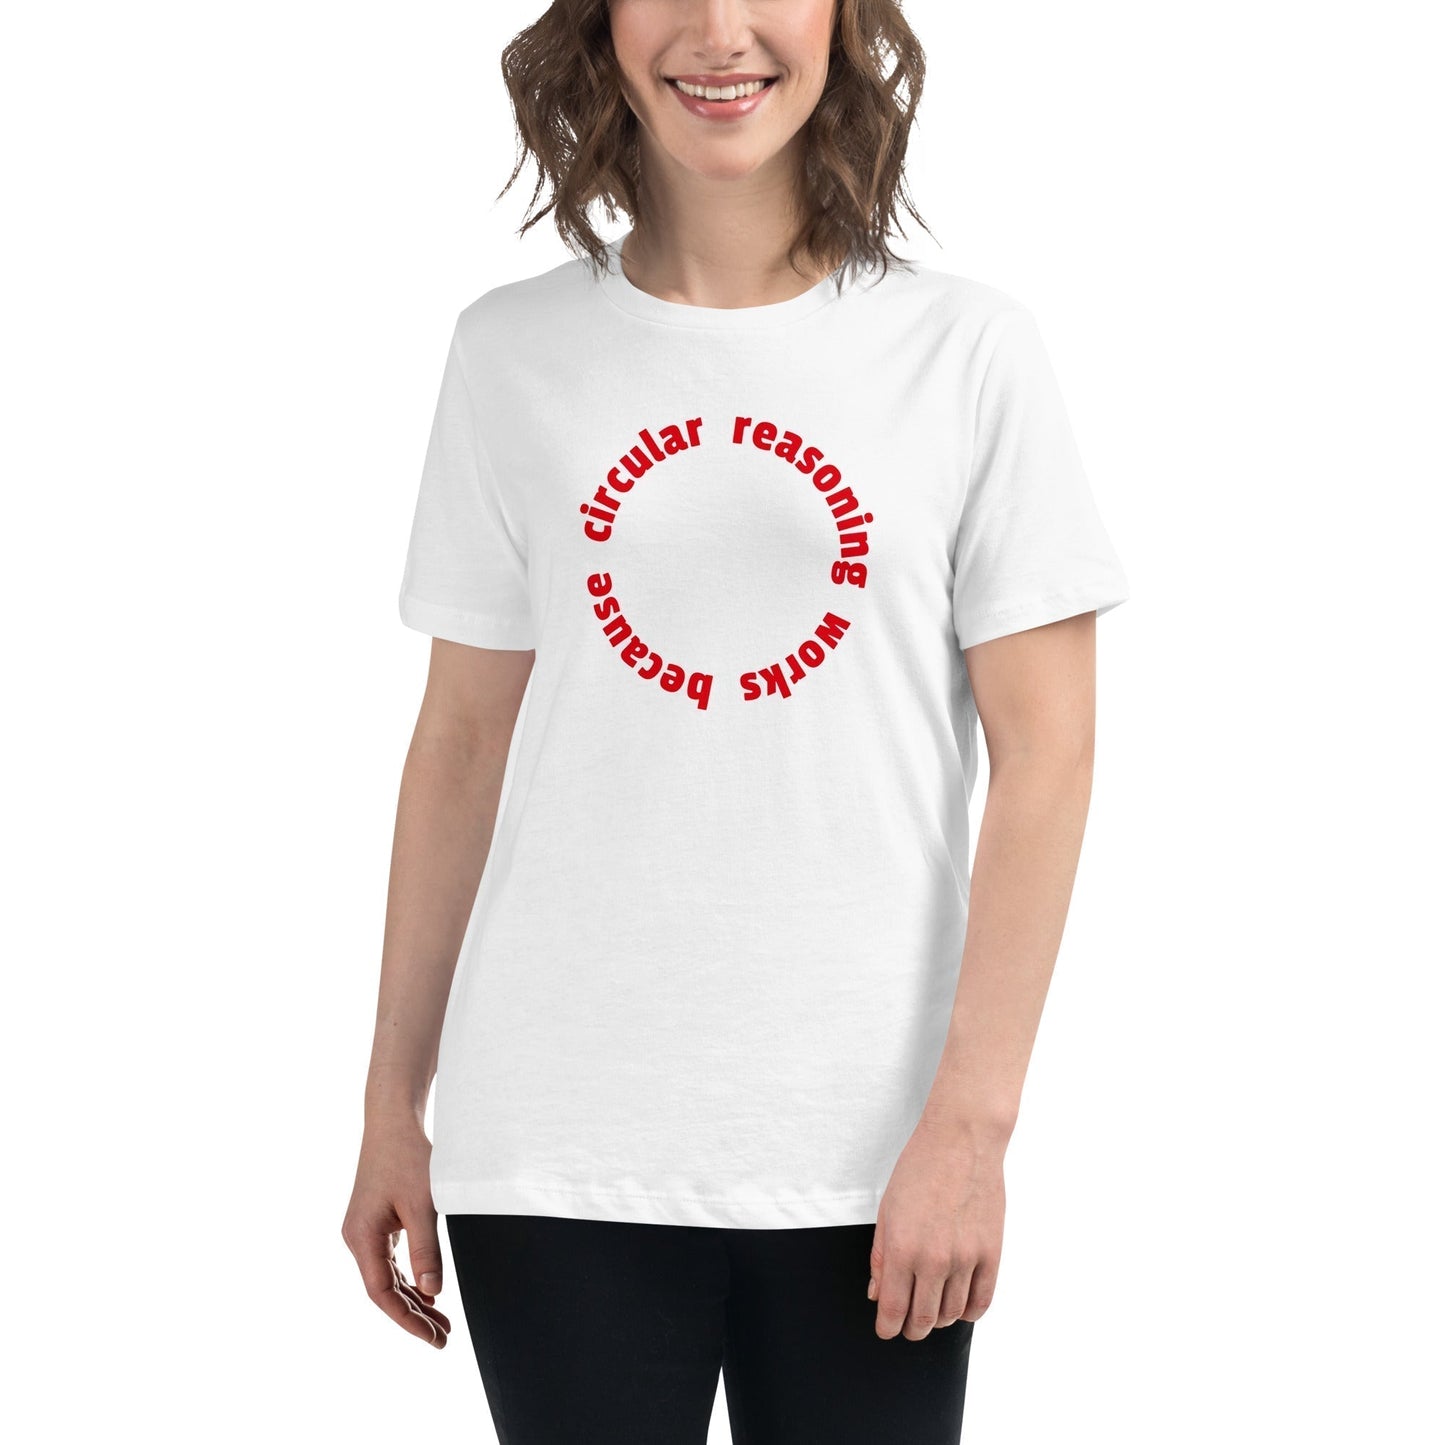 Circular reasoning works - Women's T-Shirt